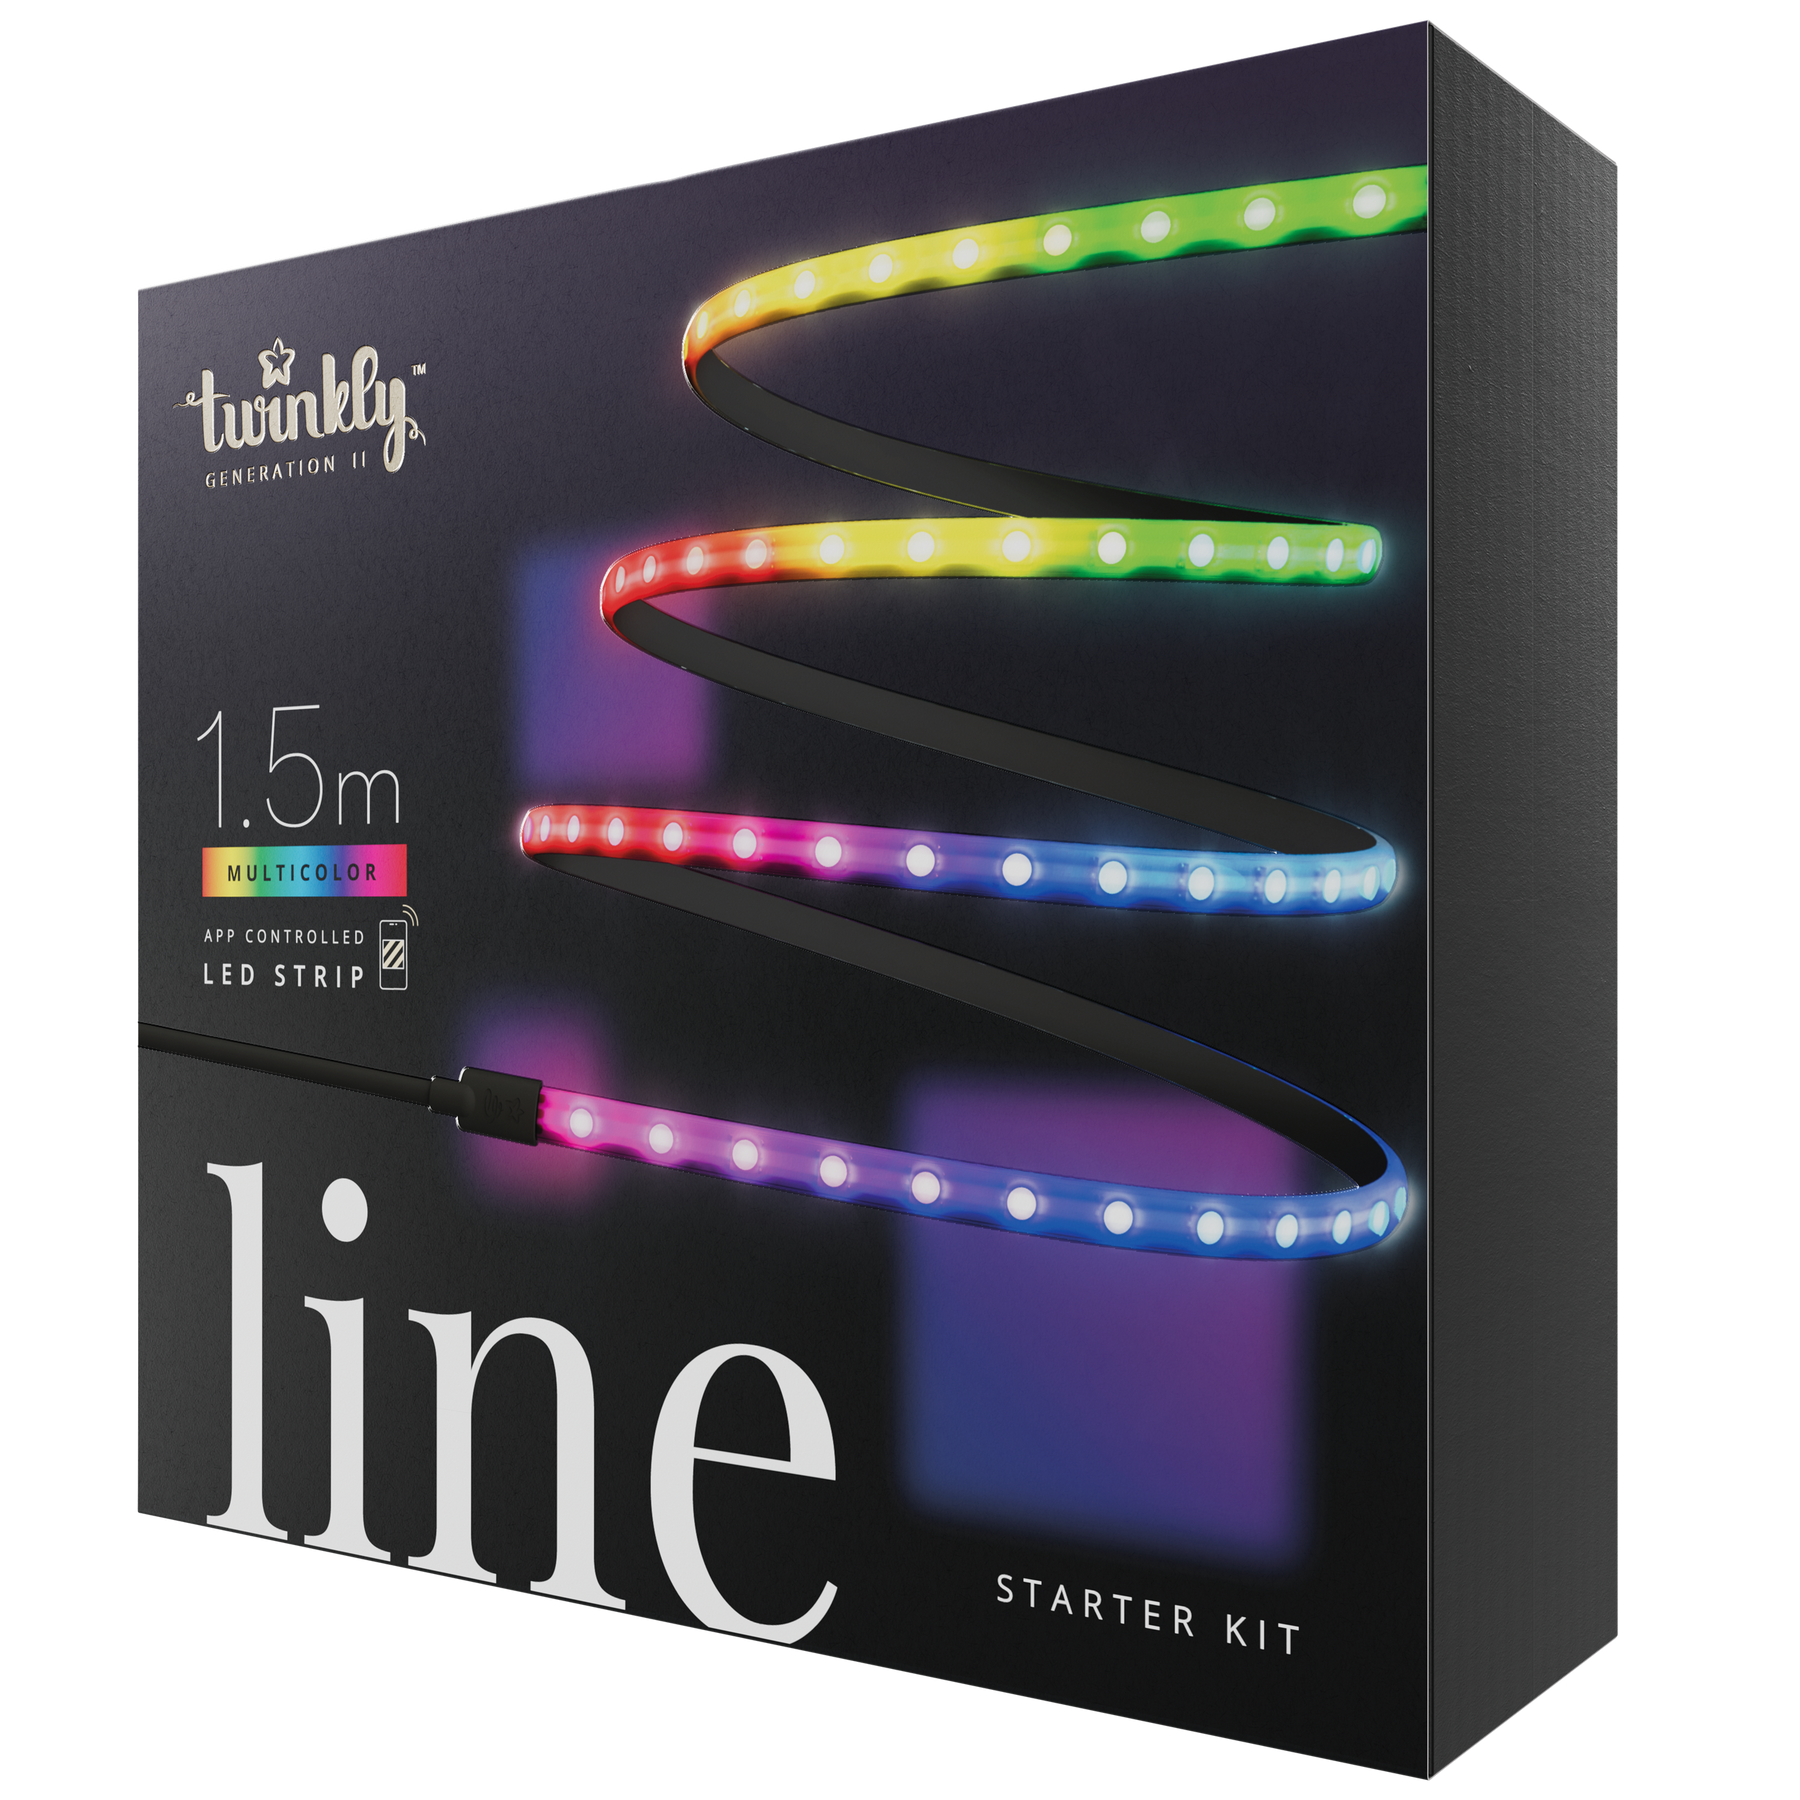 Line (flerfarvet udgave)